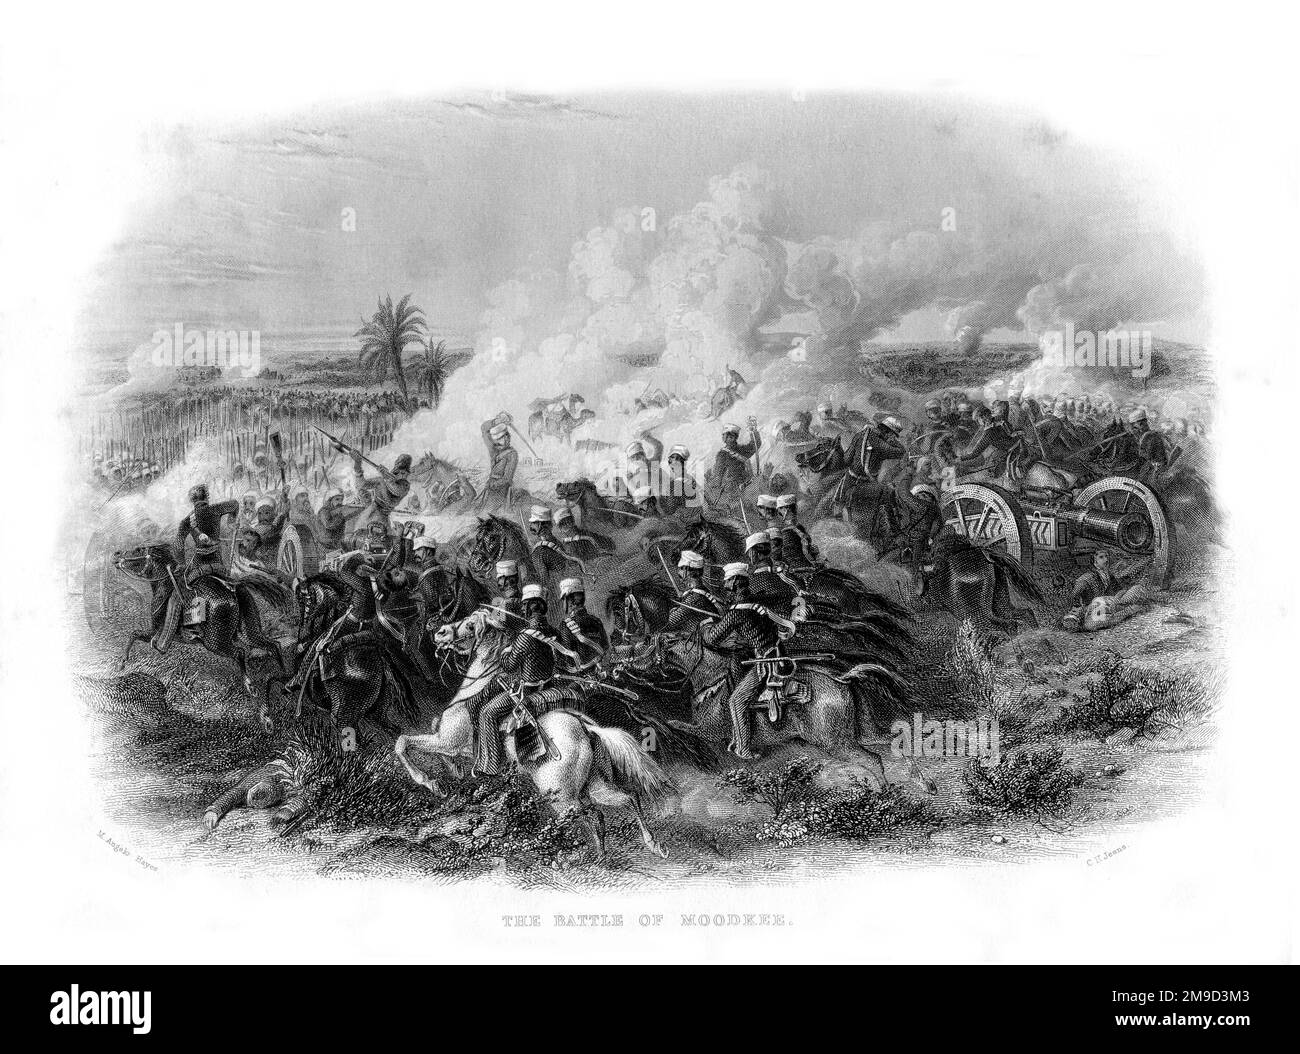 La Battaglia di Moodkee (Mudki), dicembre 1845, durante la prima guerra in Sikh. I Sikh invasero il territorio britannico e furono sconfitti dagli inglesi Foto Stock